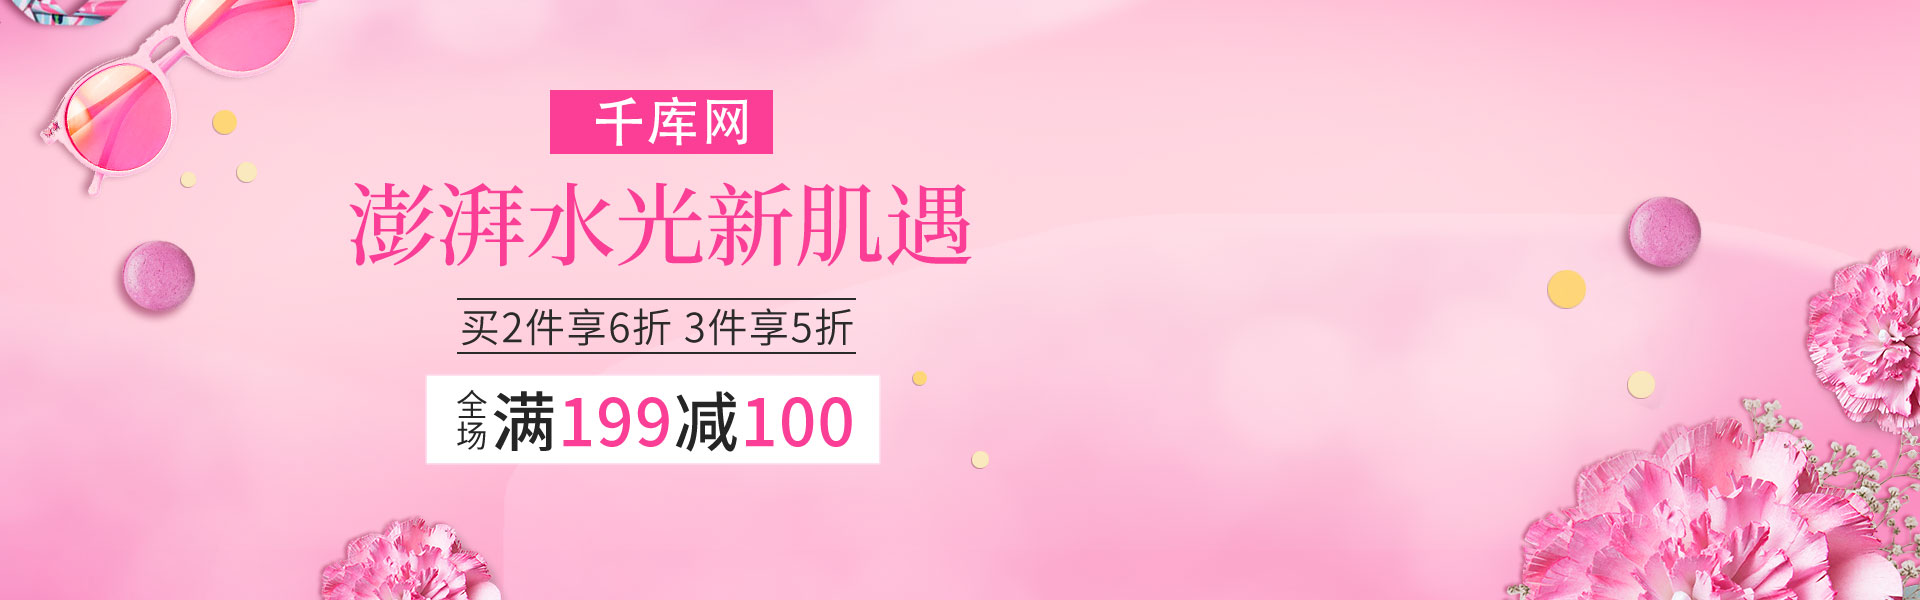 粉色浪漫头巾化妆品促销banner图片